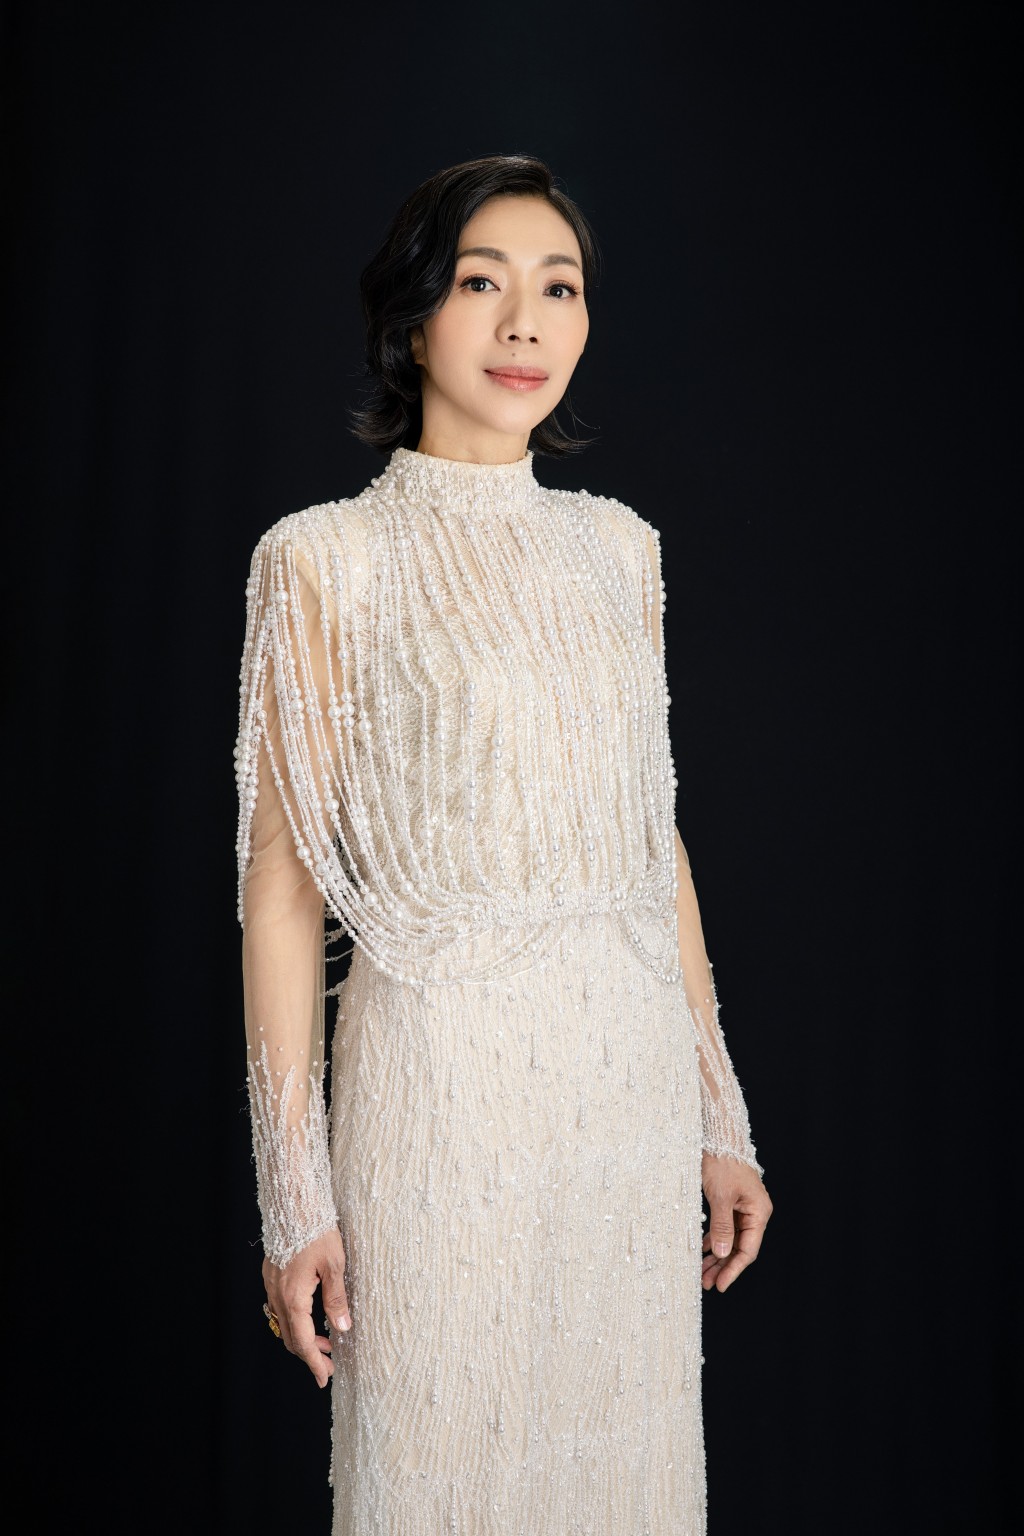 台湾歌后万芳将以独特嗓音演绎《新不了情》及《不了情》。